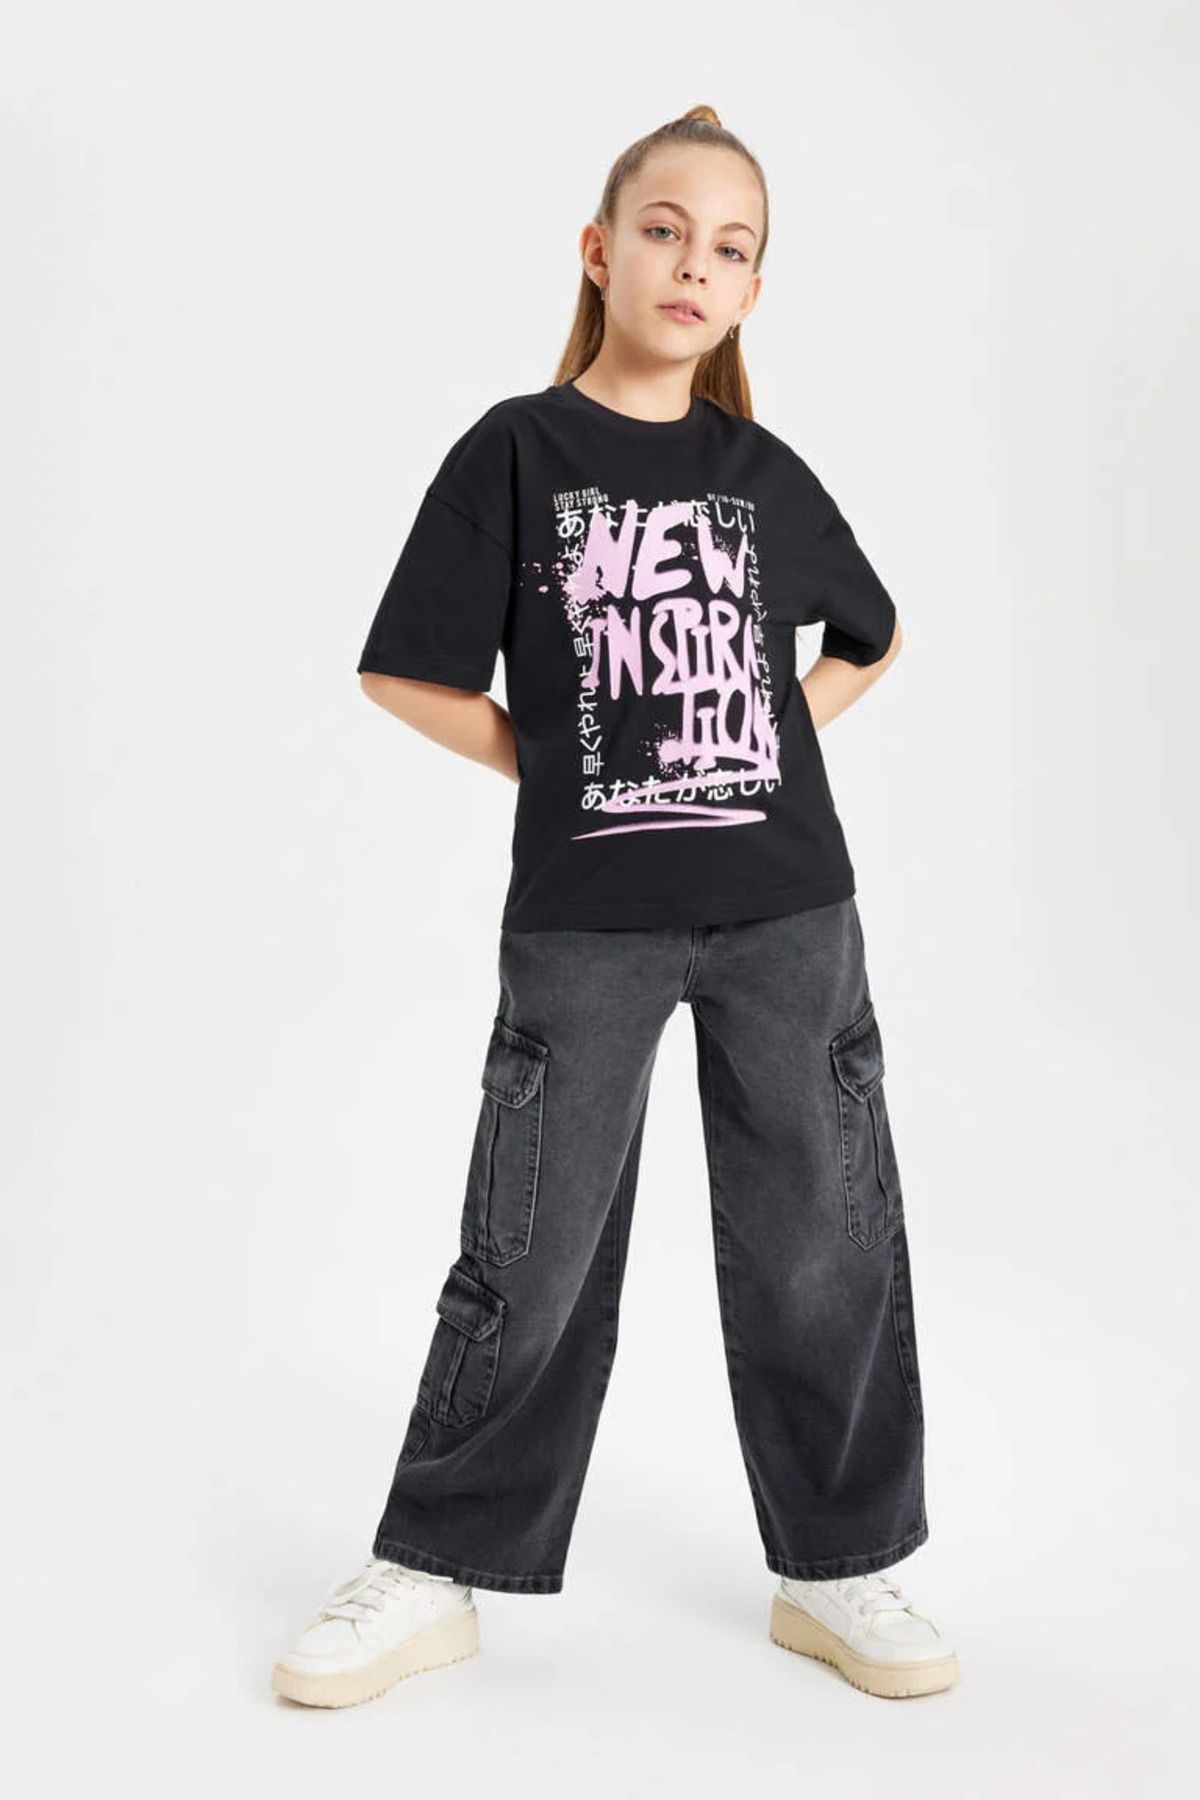 Defacto Kız Çocuk T-shirt B5092a8/bk81 Black